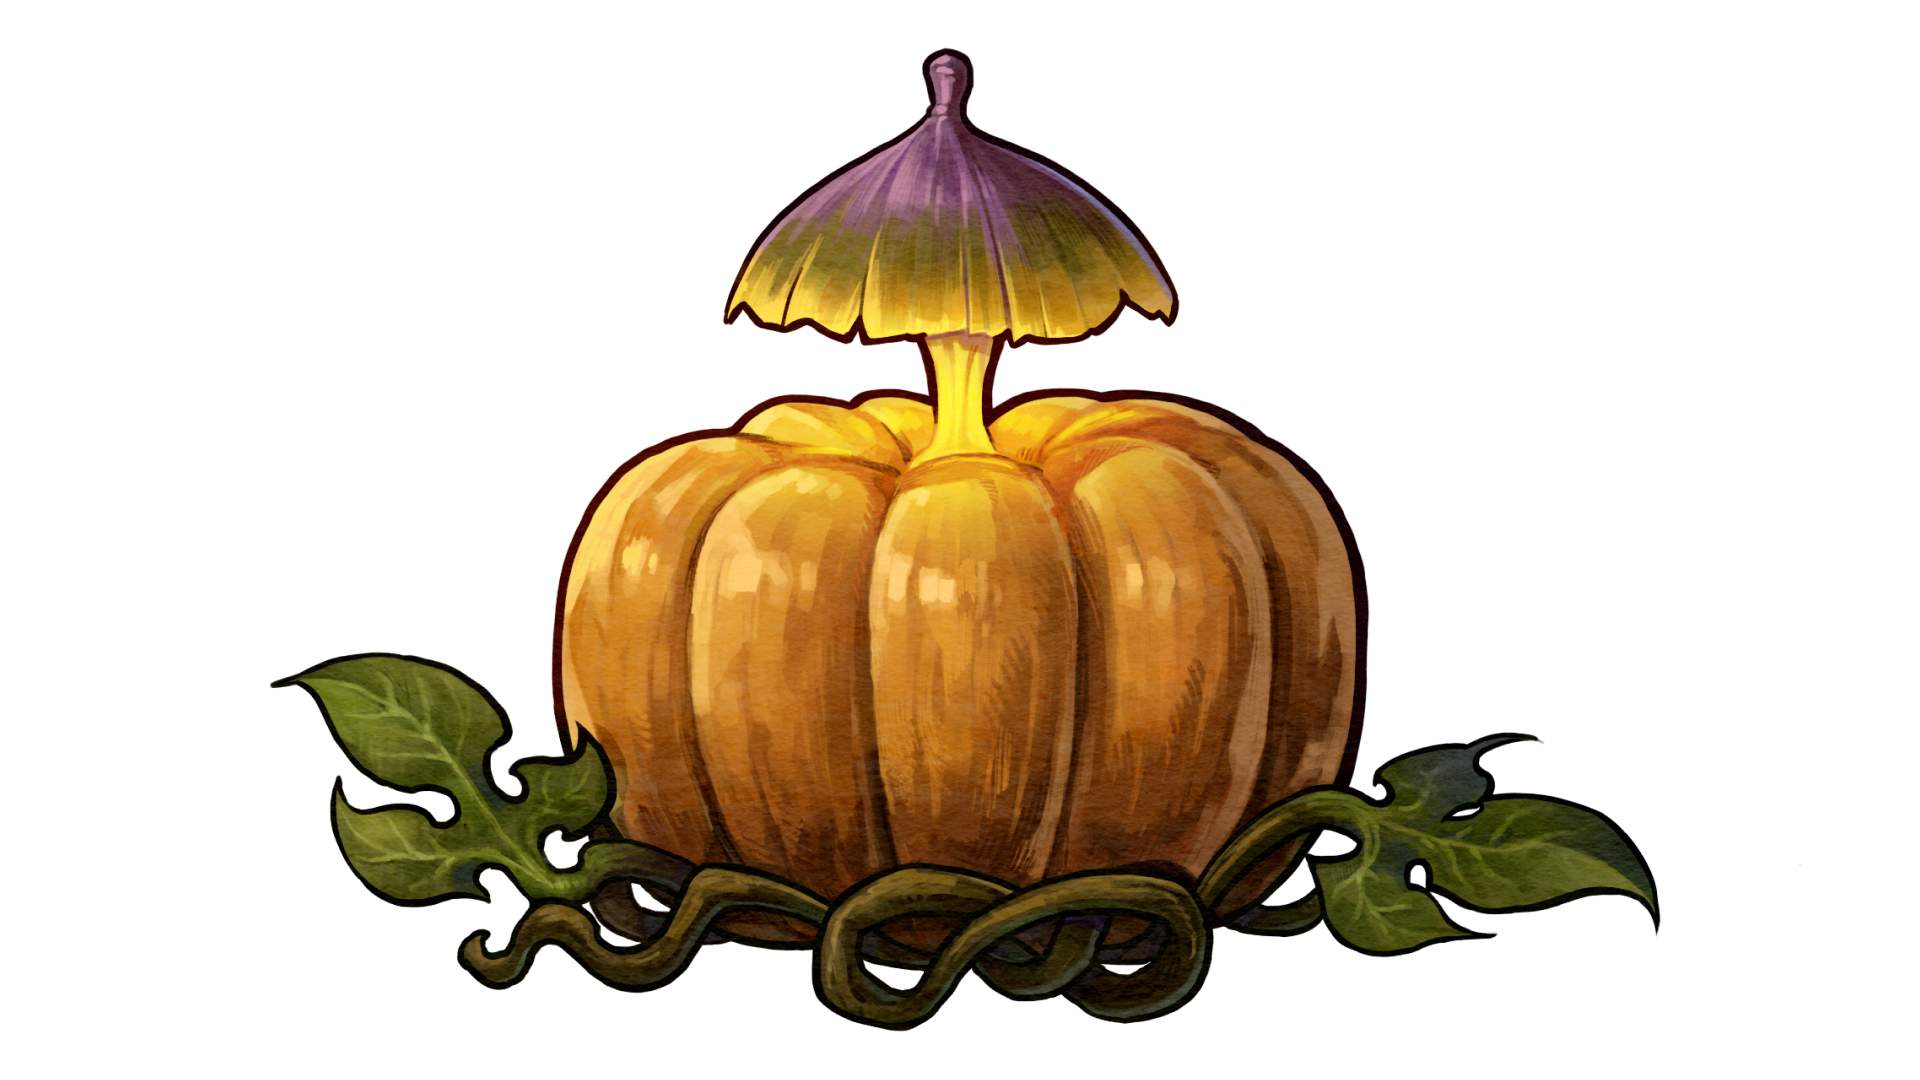 harvestella lantern pumpkin 17pvo6puw